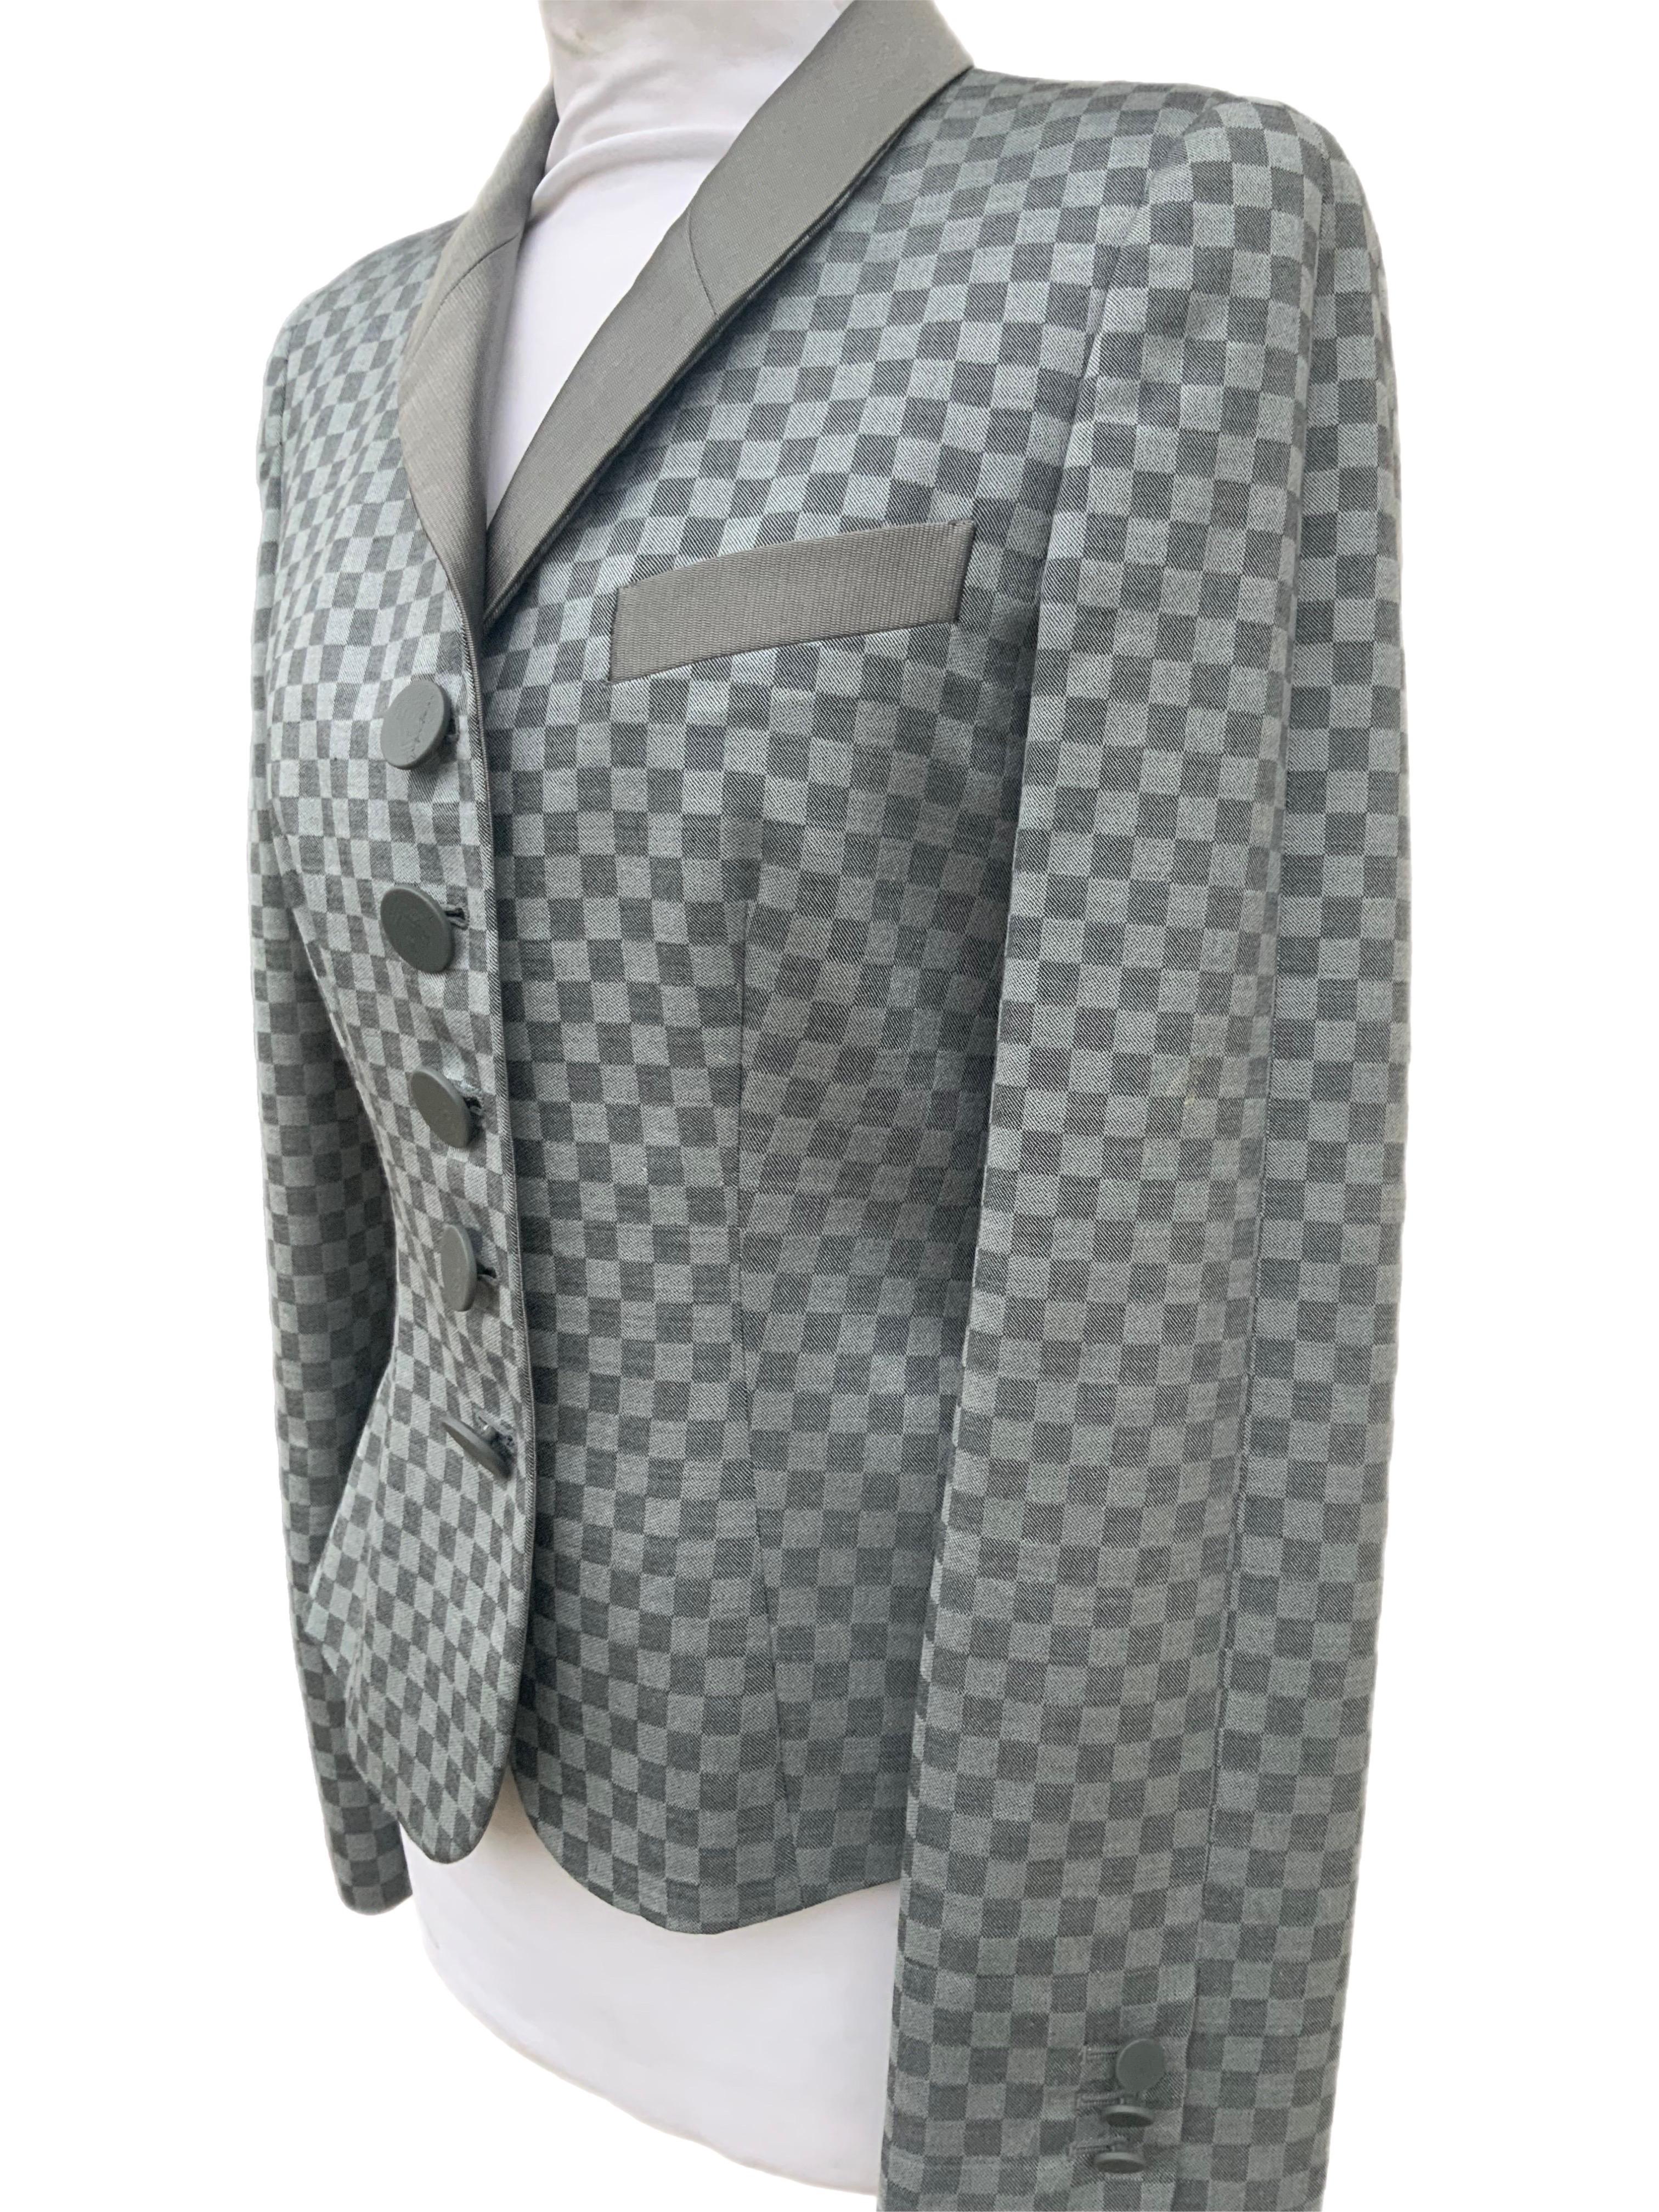 Giorgio Armani checkered blazer For Sale 2